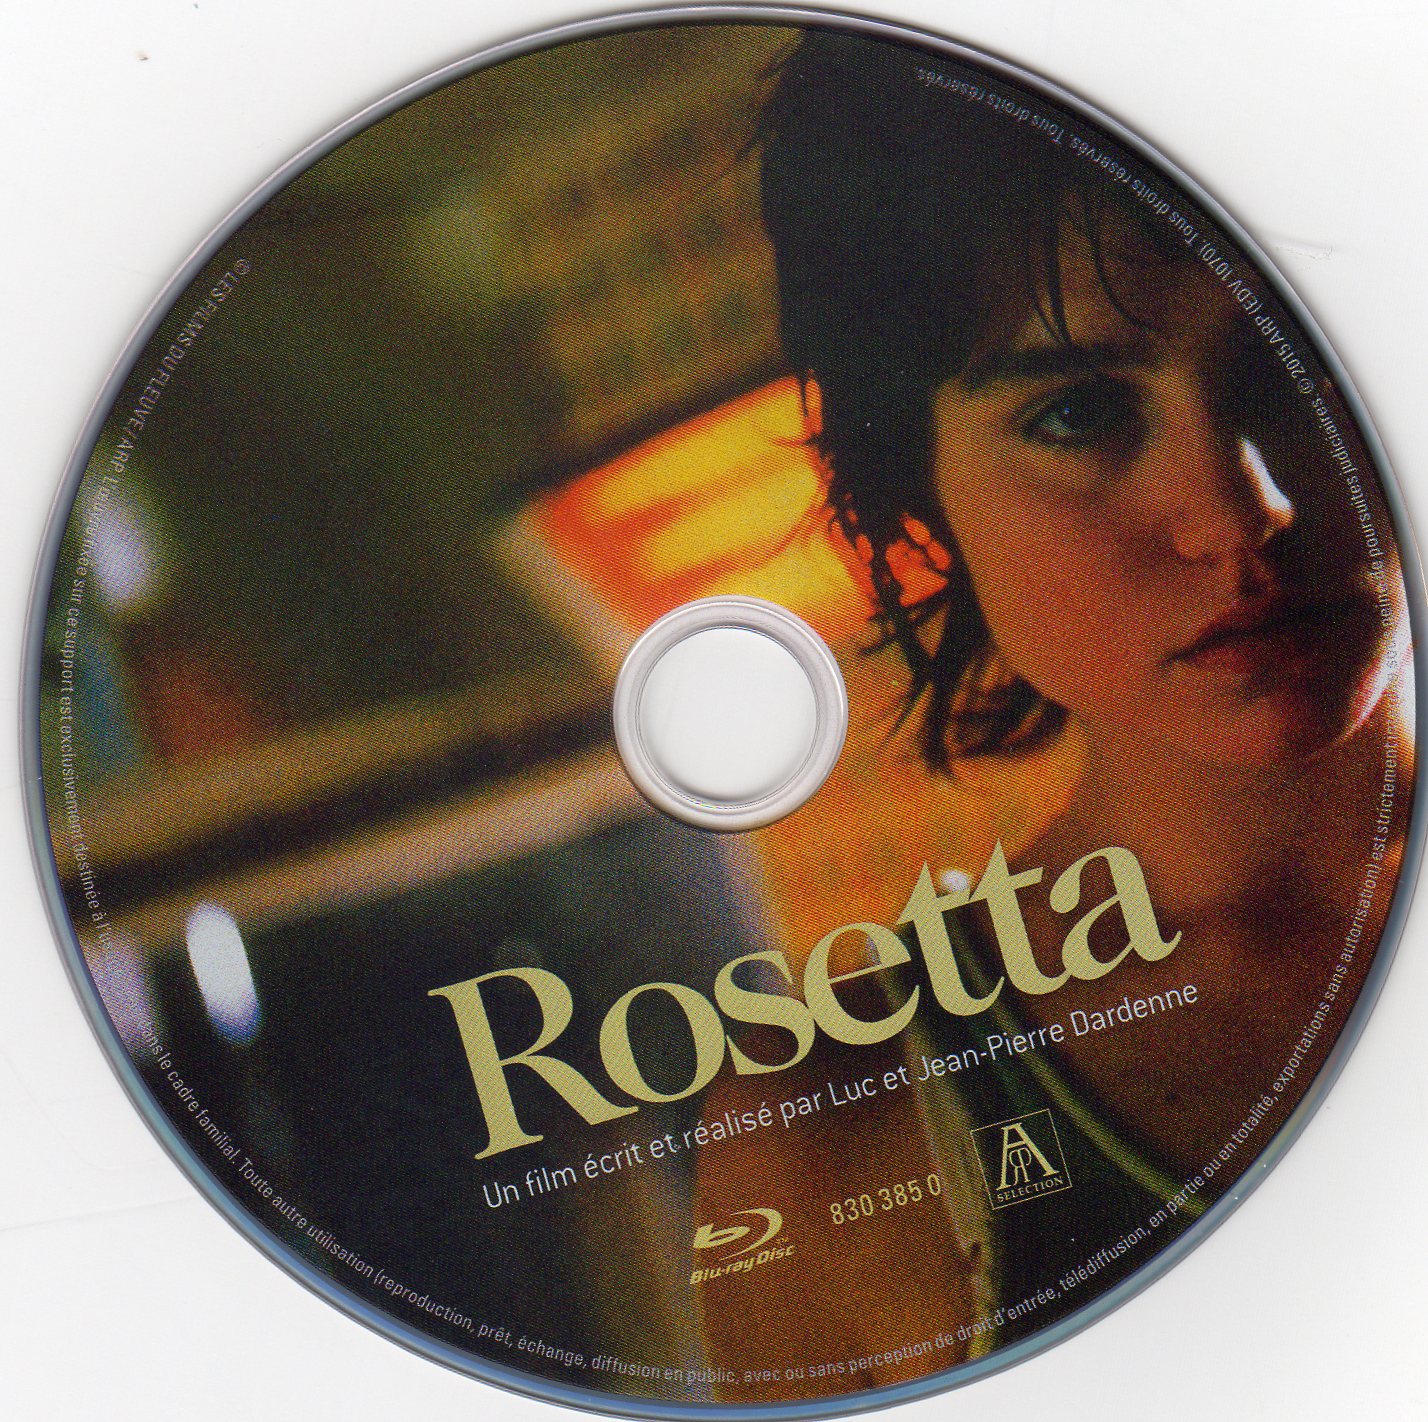 Rosetta v3